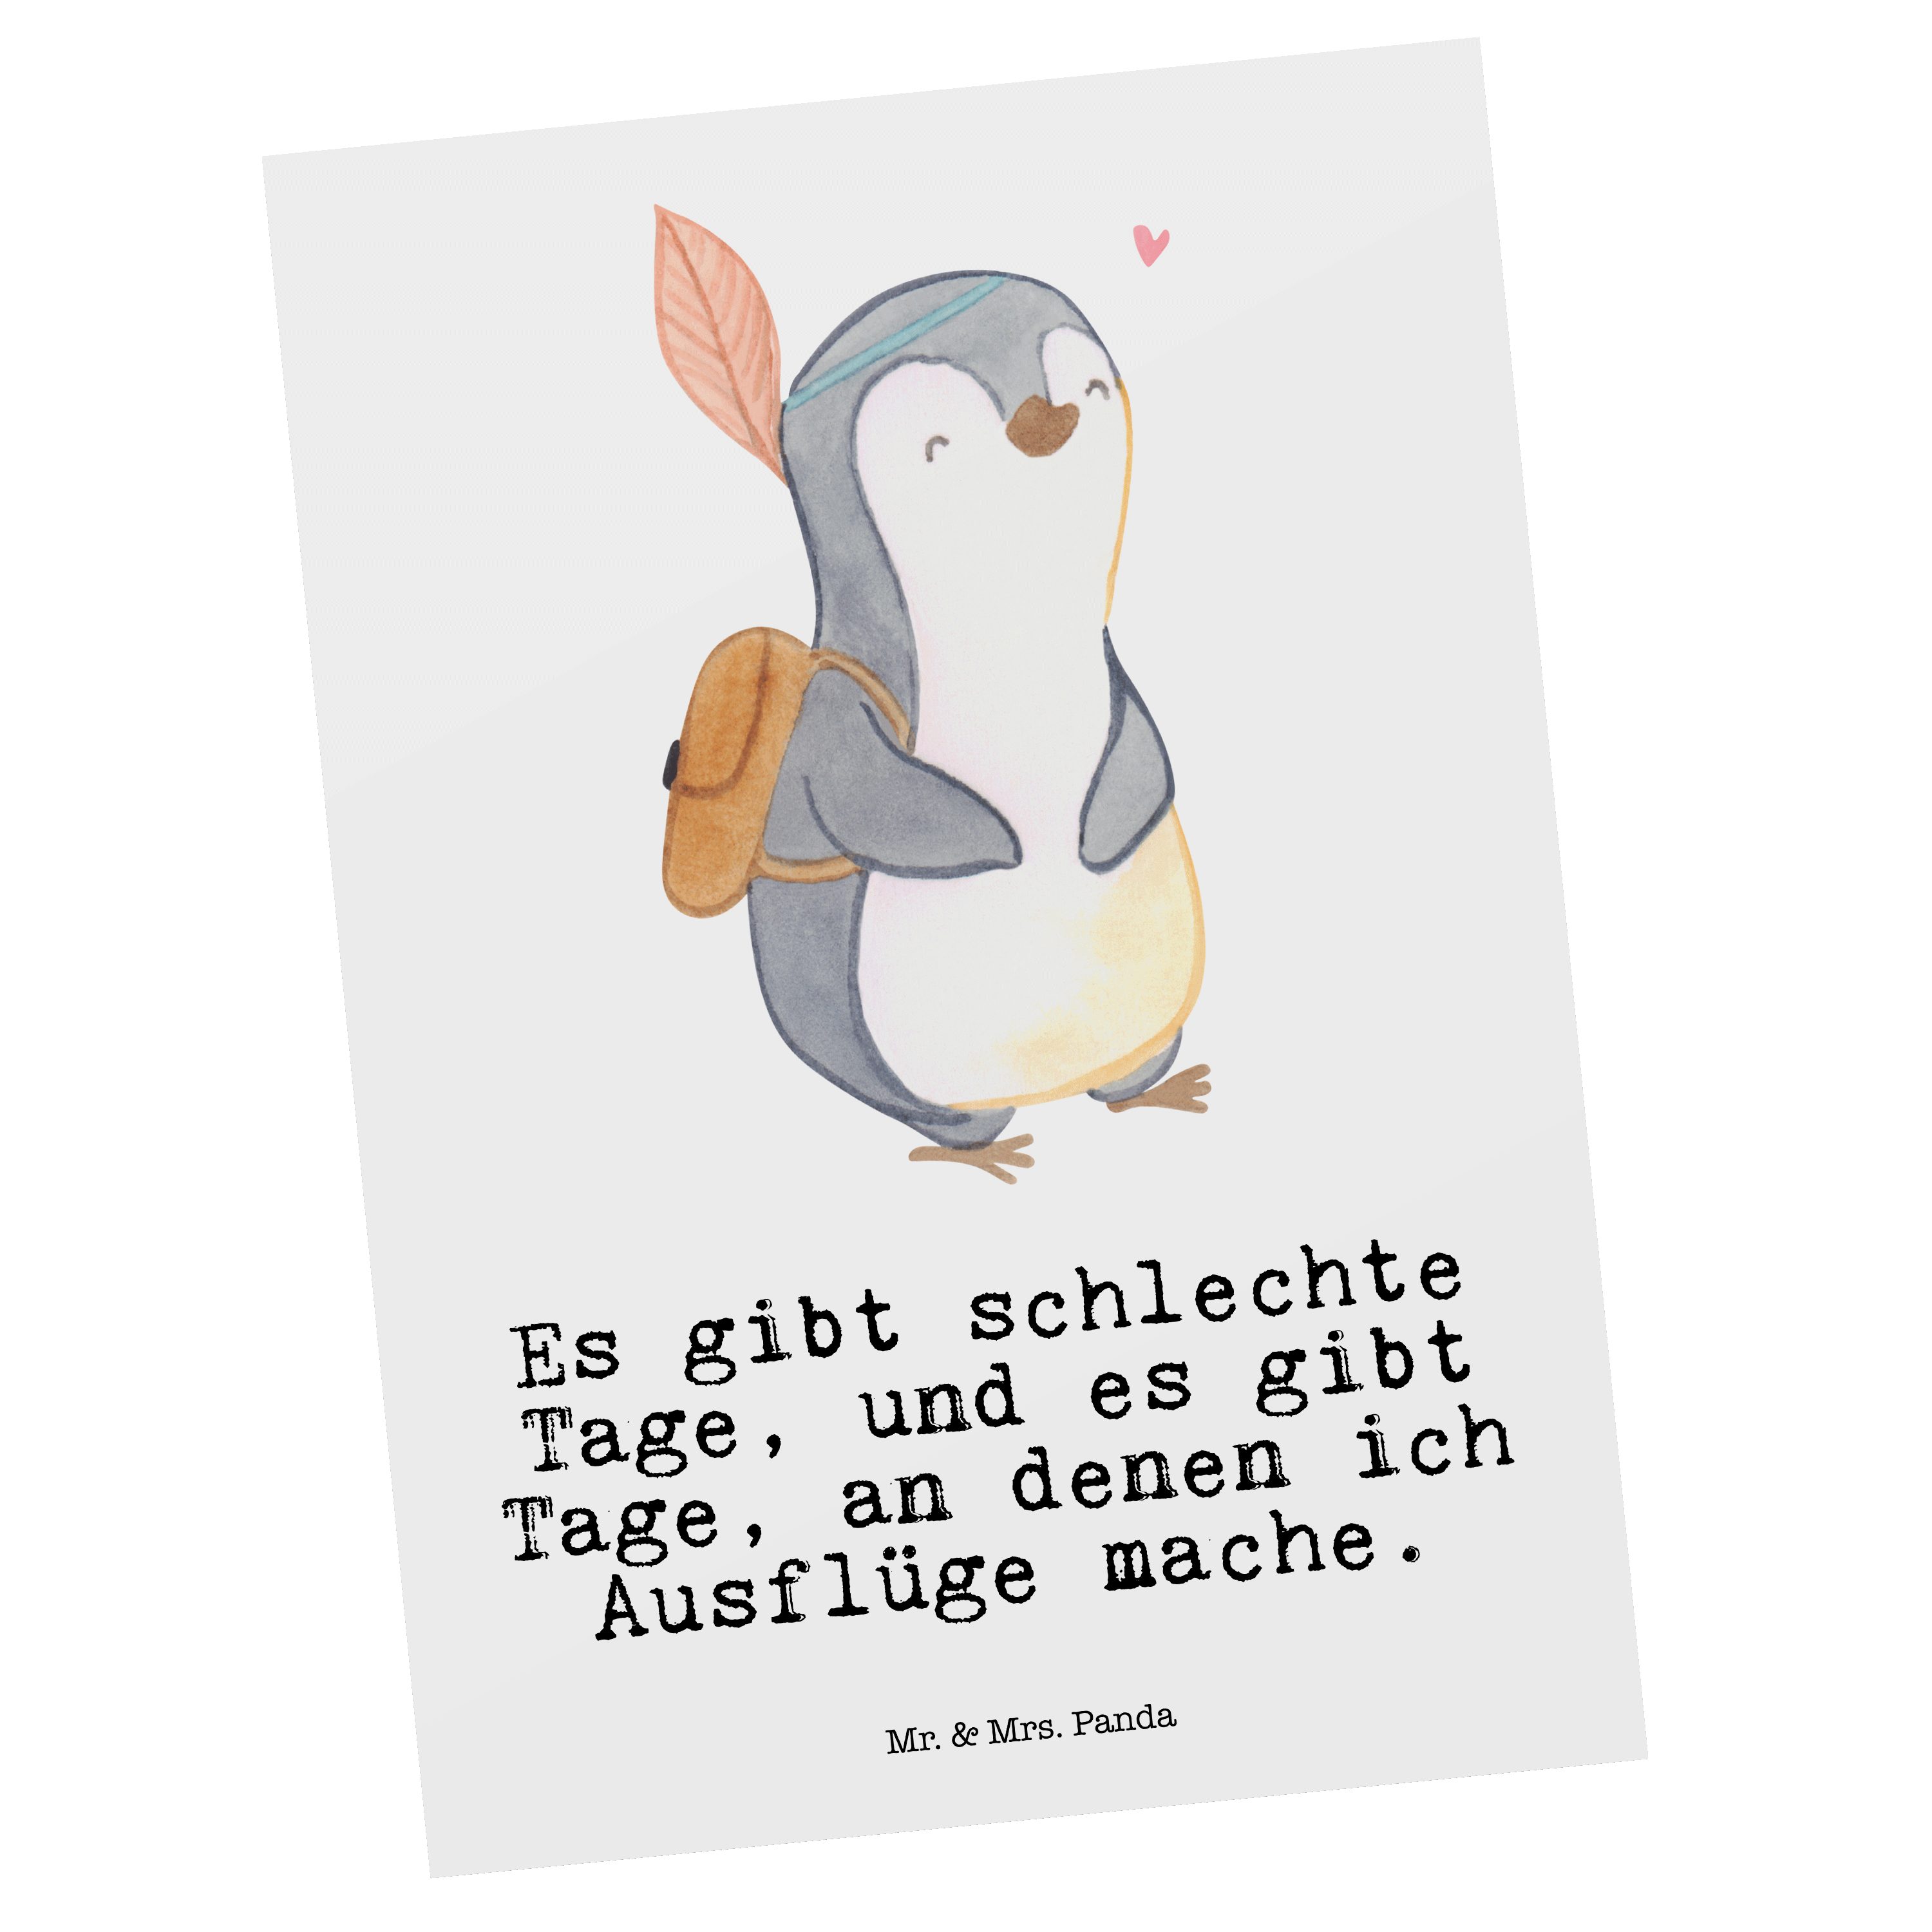 Mr. & Mrs. Panda Postkarte Pinguin Ausflug Tage - Weiß - Geschenk, reisen, Einladung, Dankeskart